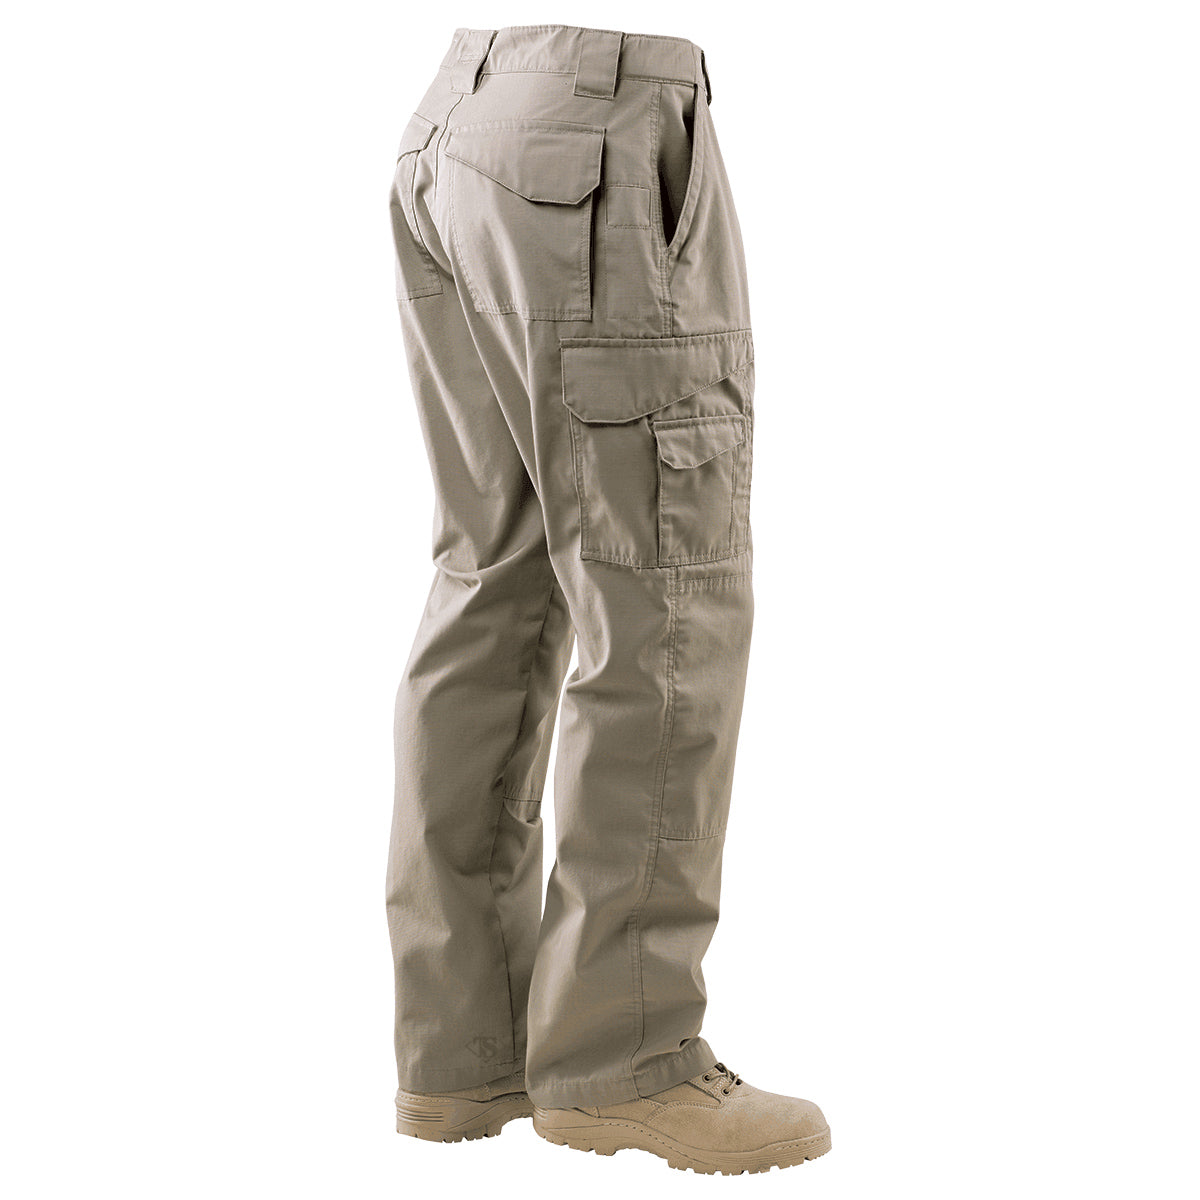 Tru-Spec 24-7 Series Mens Tactical Pants (Khaki, Coyote)